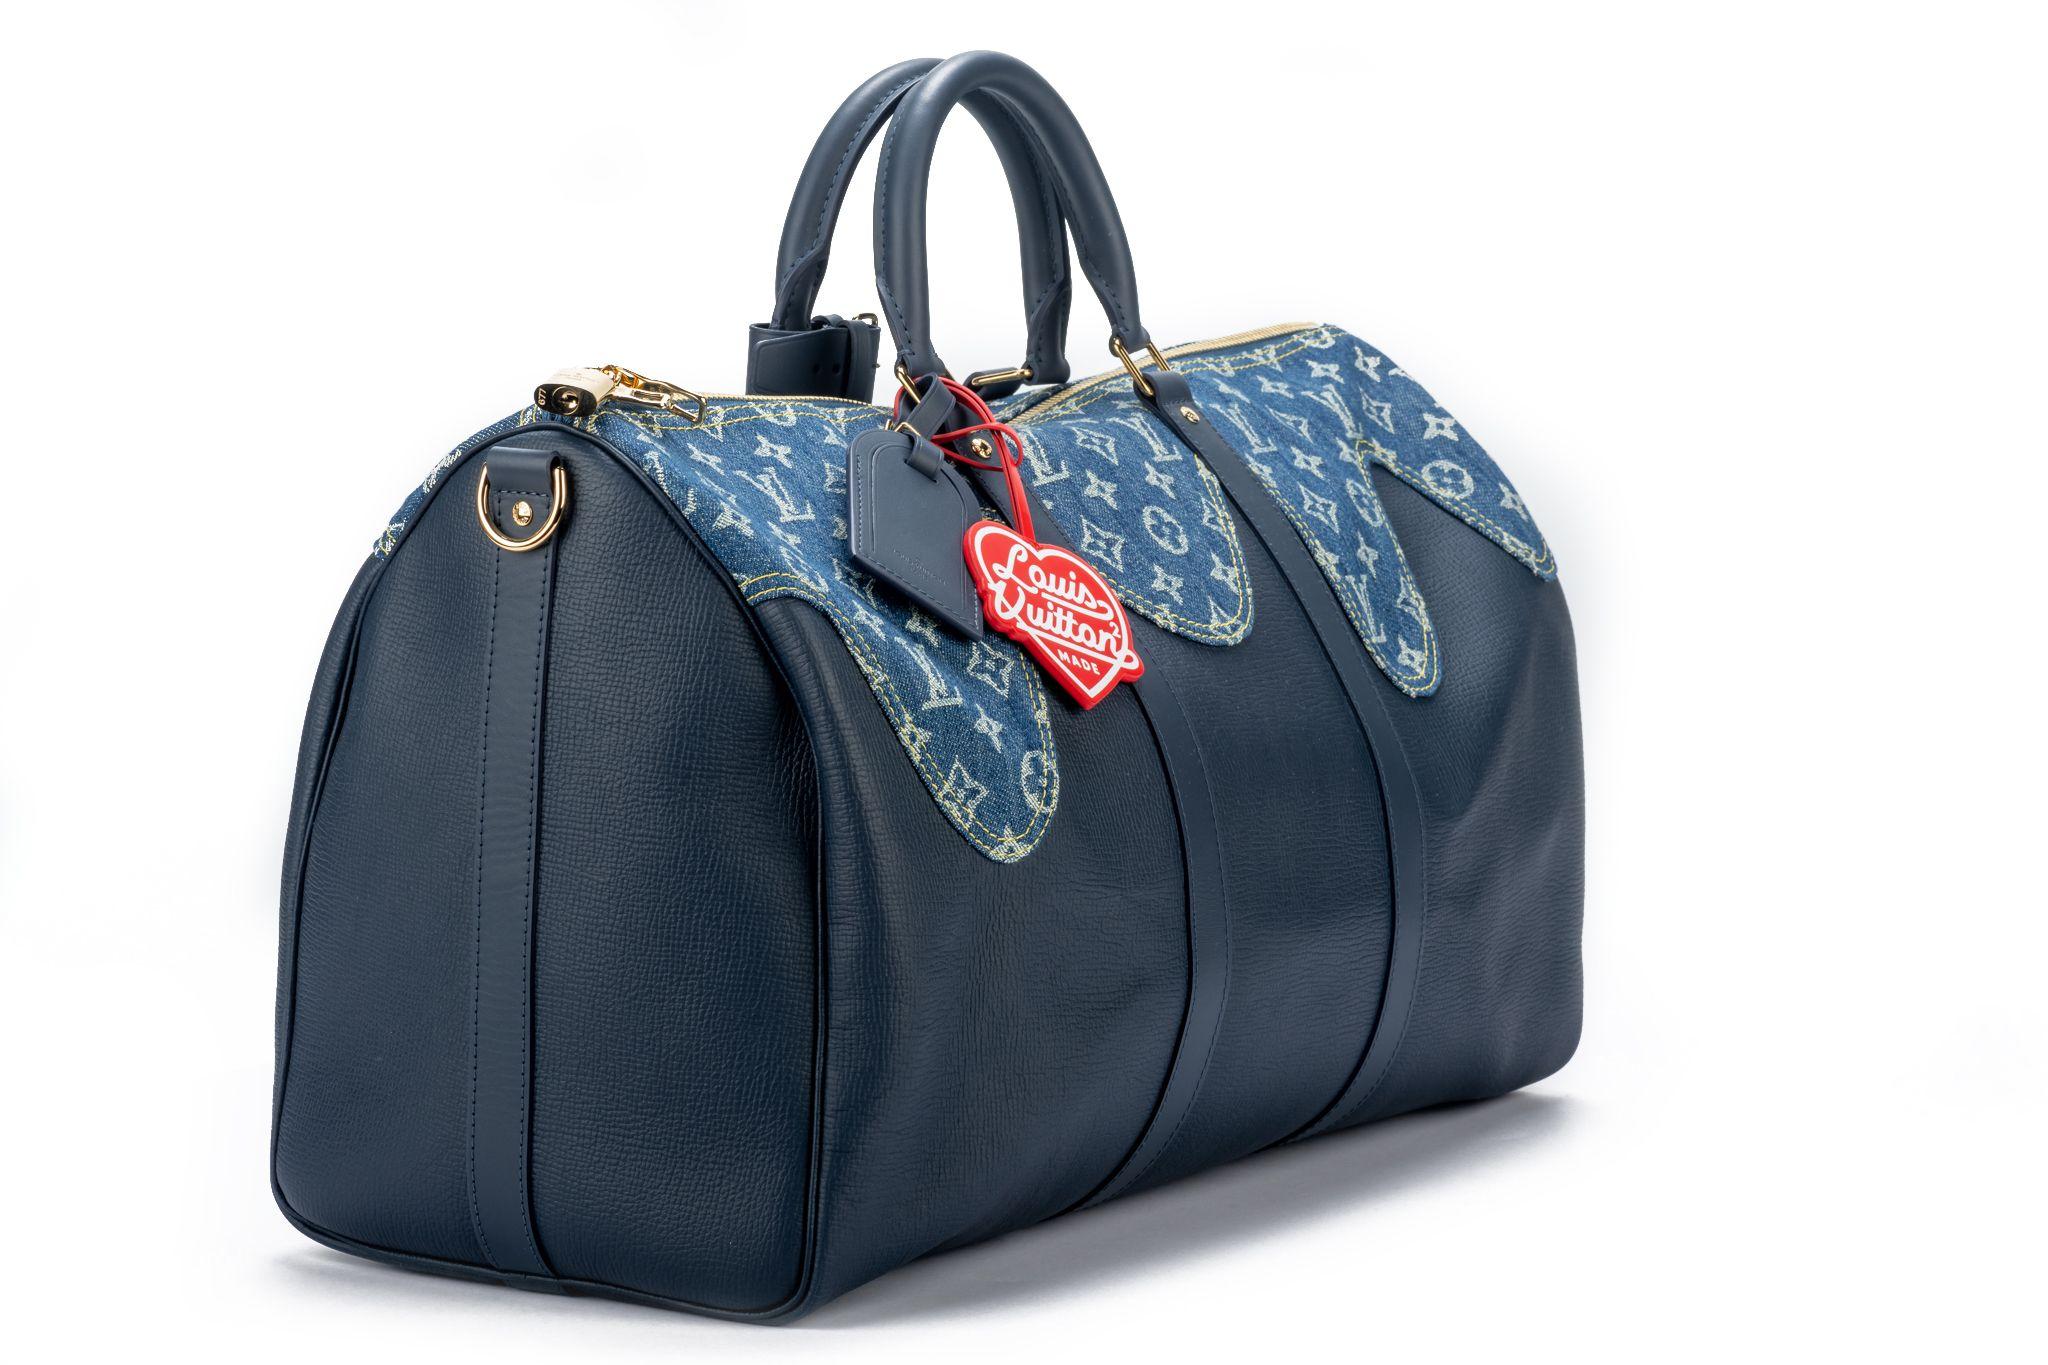 Édition limitée Louis Vuitton x NIGO Bleu Monogram Denim Drip & Taurillon Keepall Bandoulière 50 avec quincaillerie dorée de 2021.Ce sac est doublé d'une matière textile bleue. Le sac a été présenté lors de la collaboration pré-printemps 2022 avec